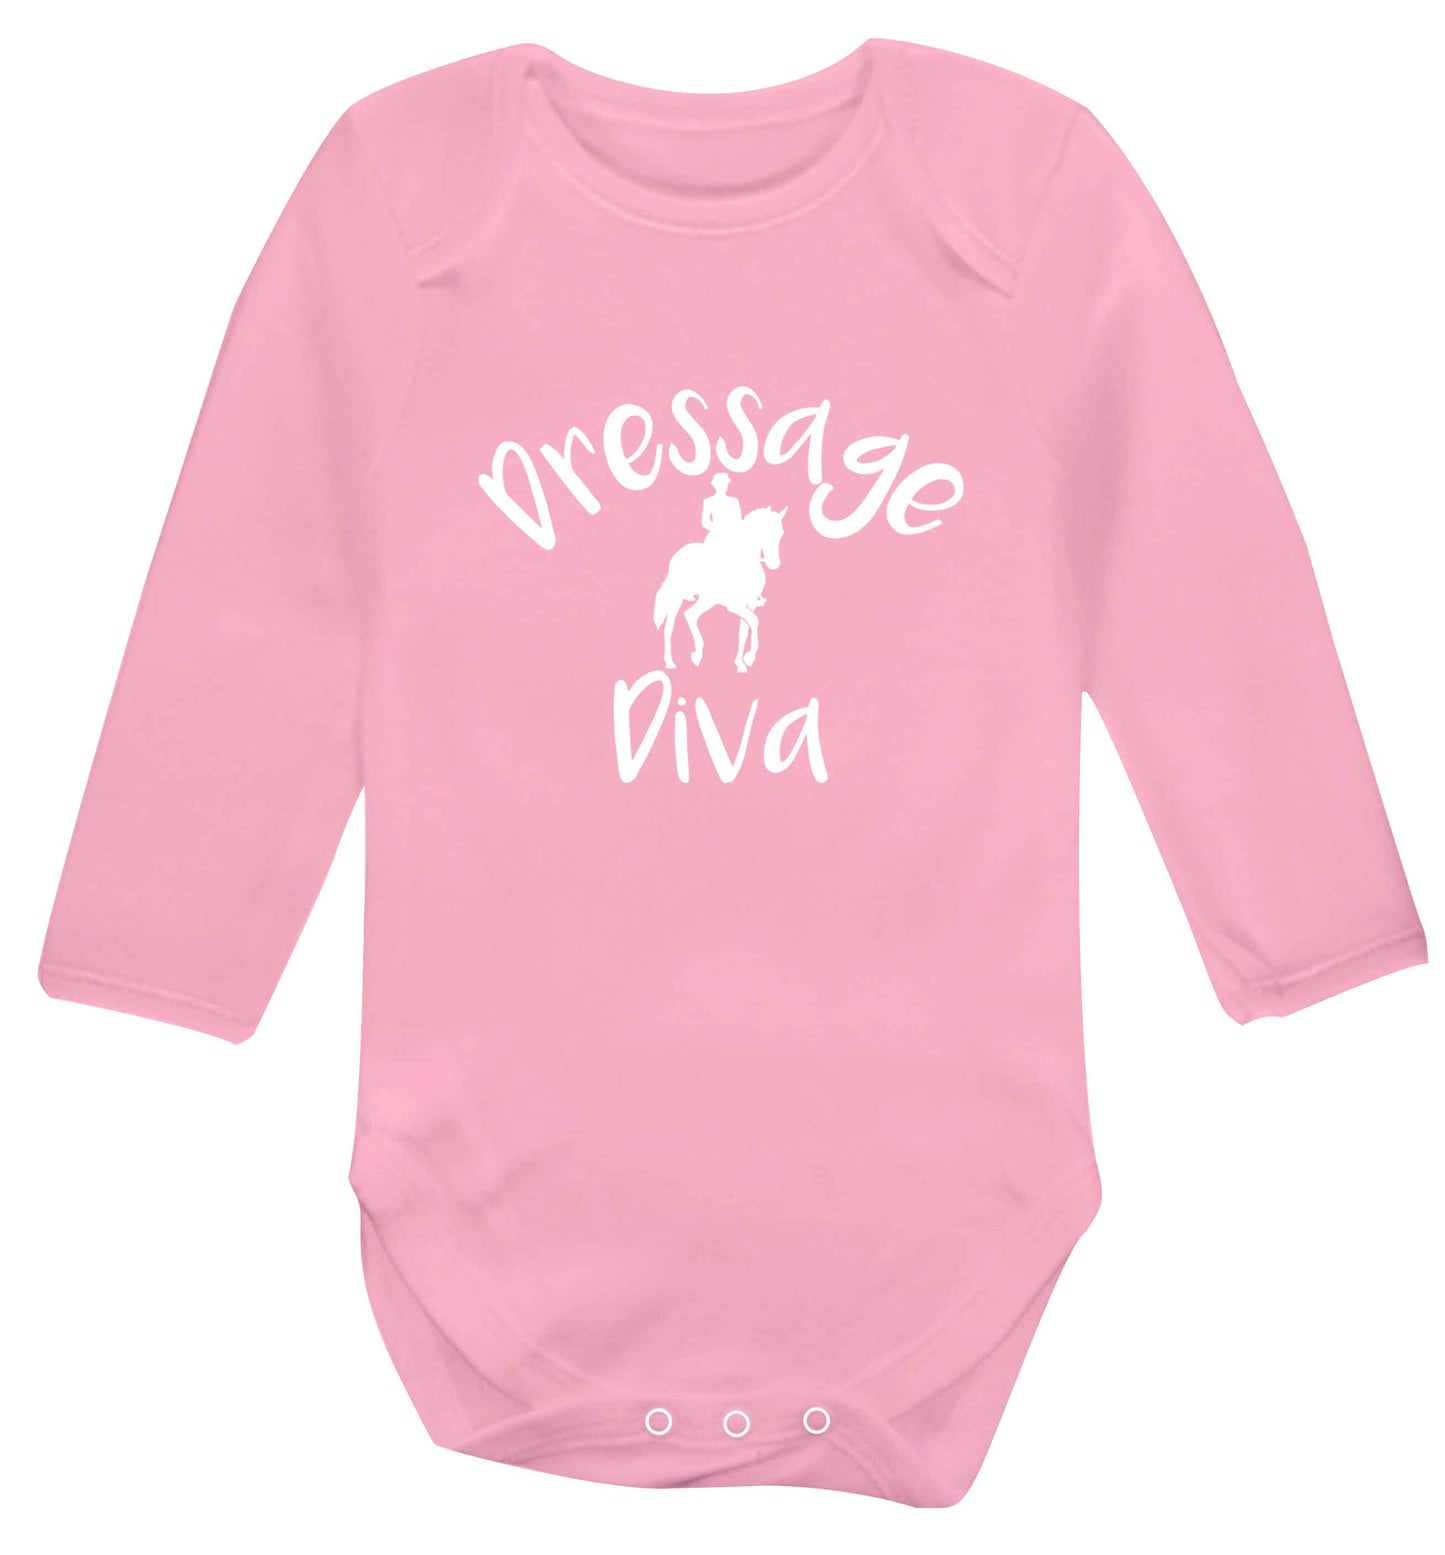 Dressage diva baby vest long sleeved pale pink 6-12 months